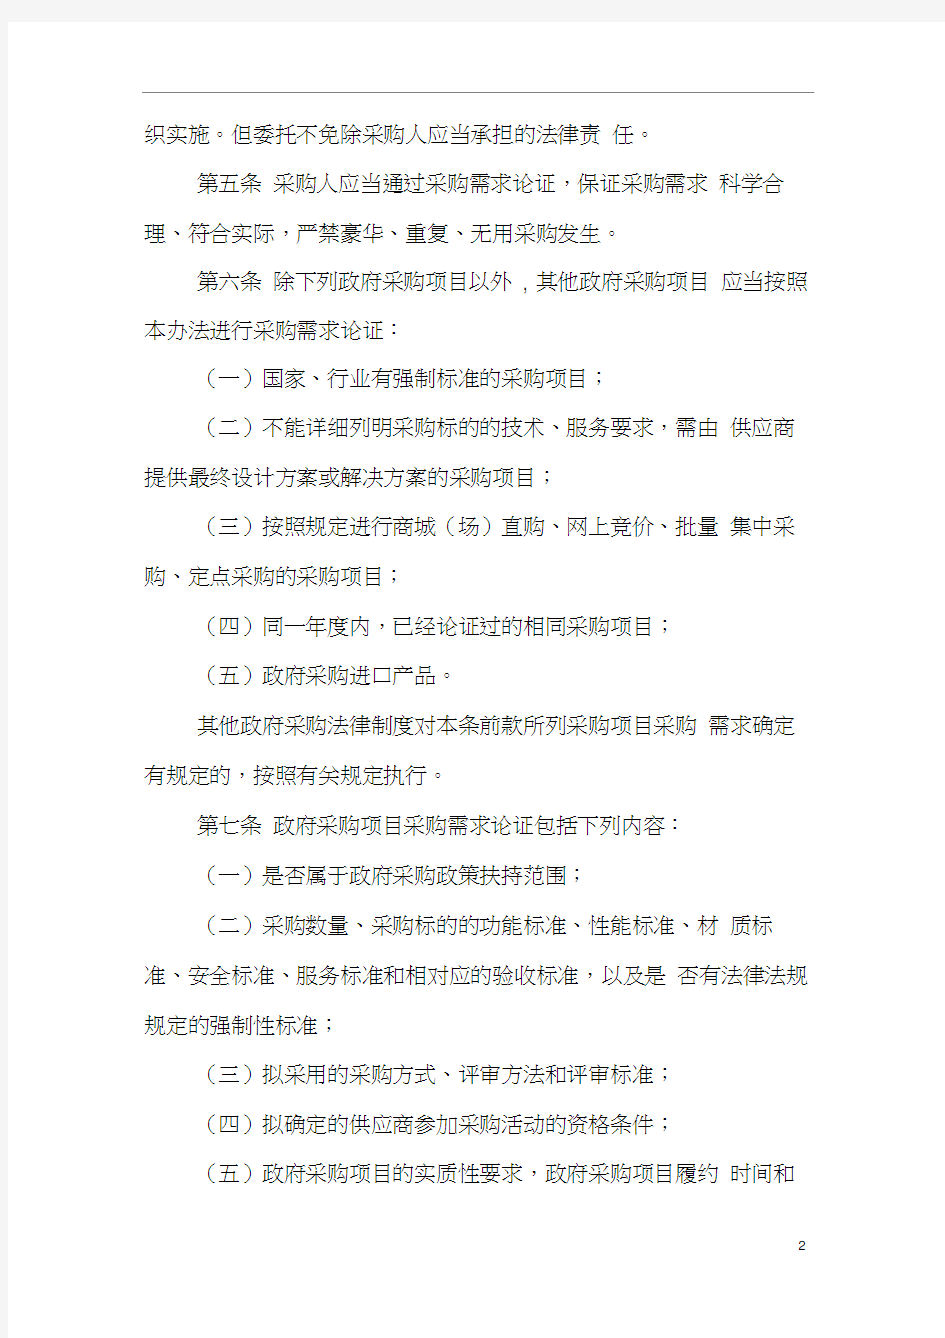 《四川省政府采购项目需求论证和履约验收管理办法》(2015征求意见稿)模板